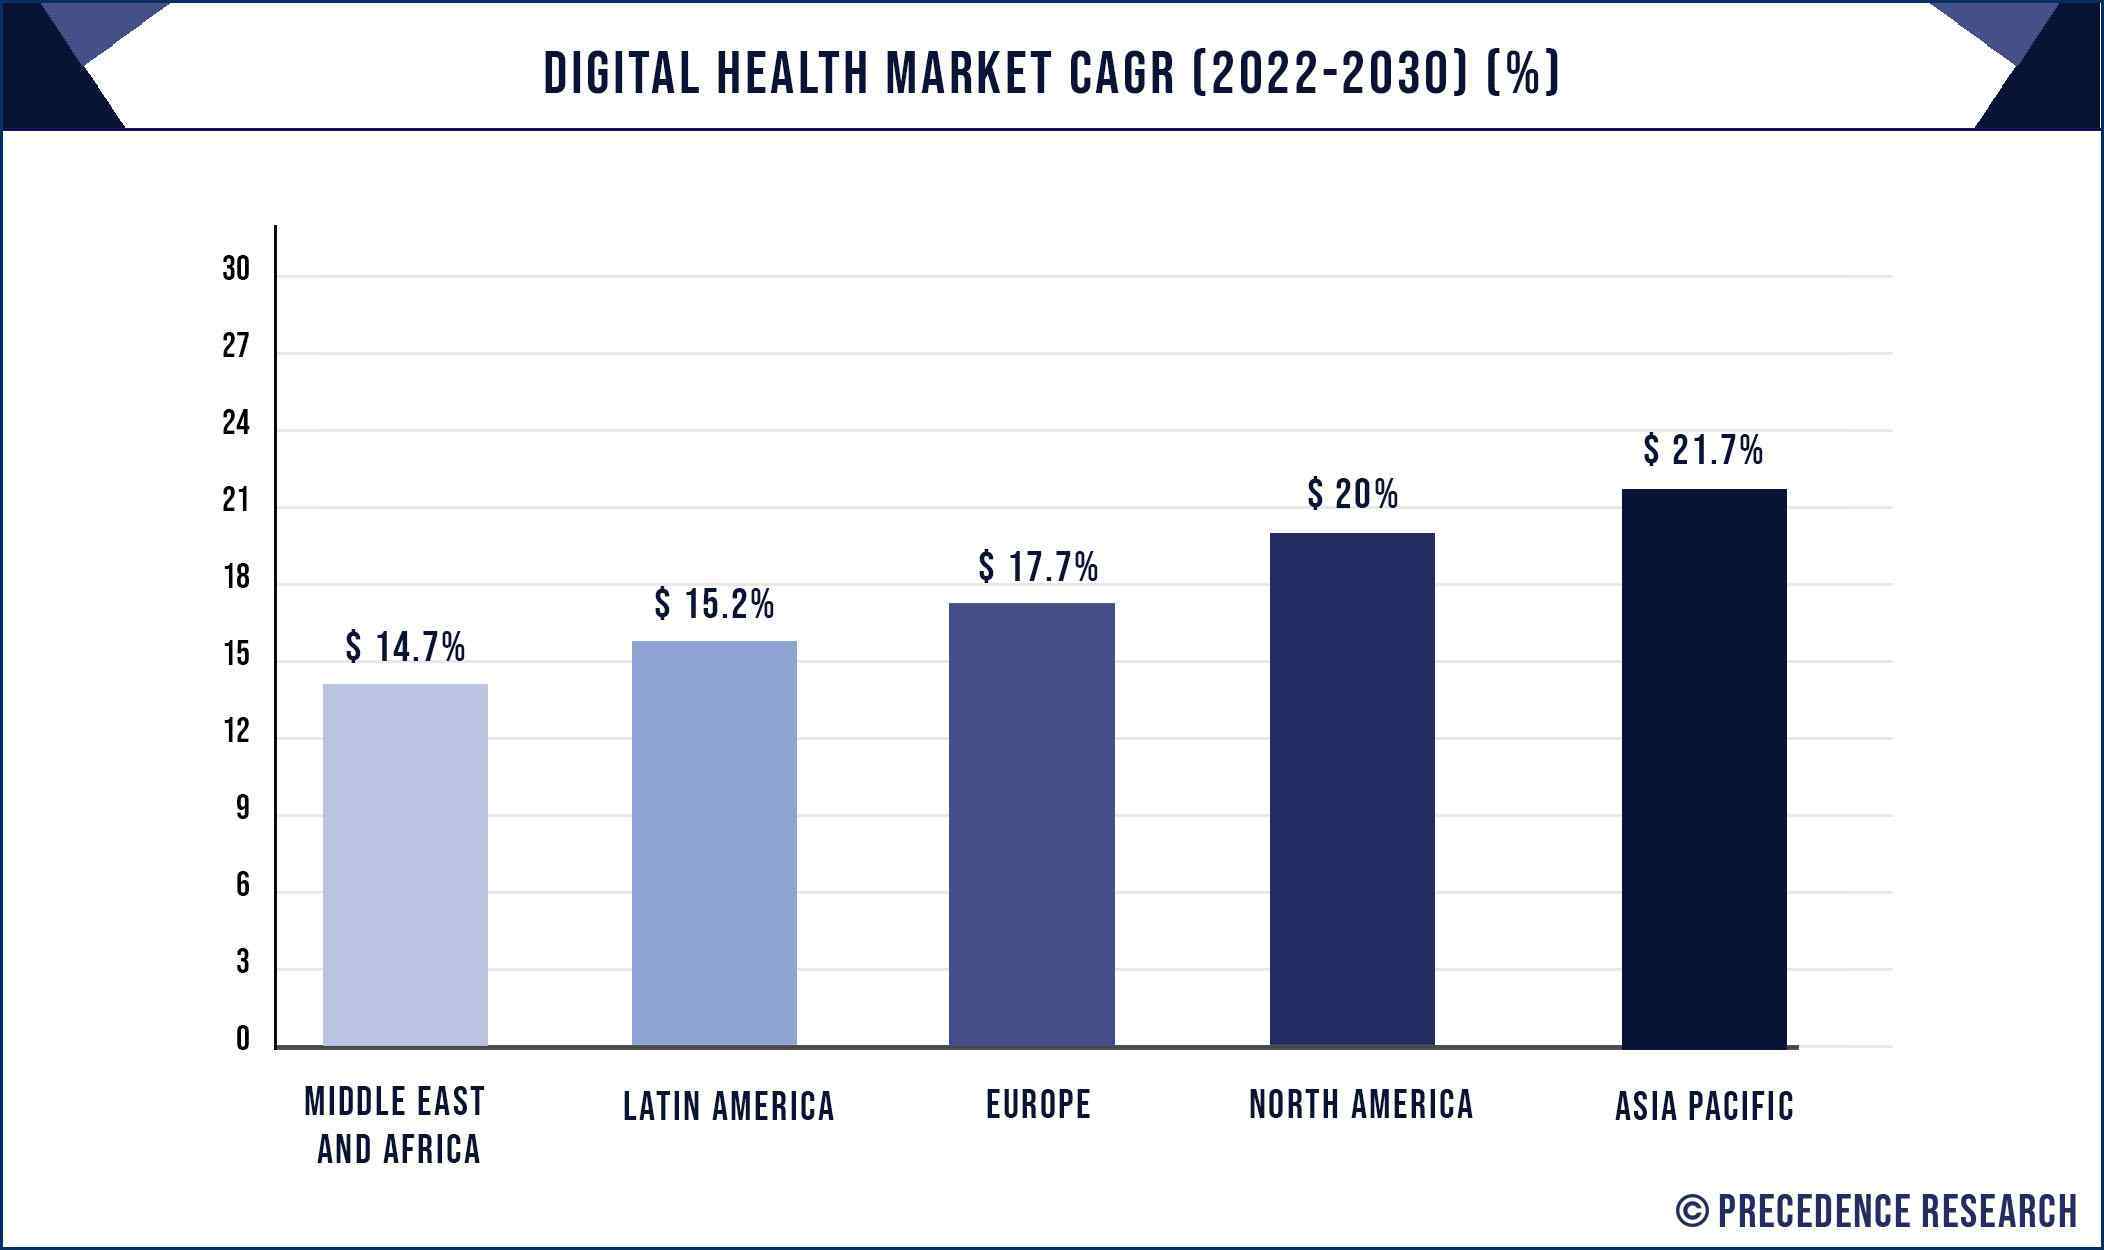 Digital Health Market CAGR By Region, 2022 to 2030